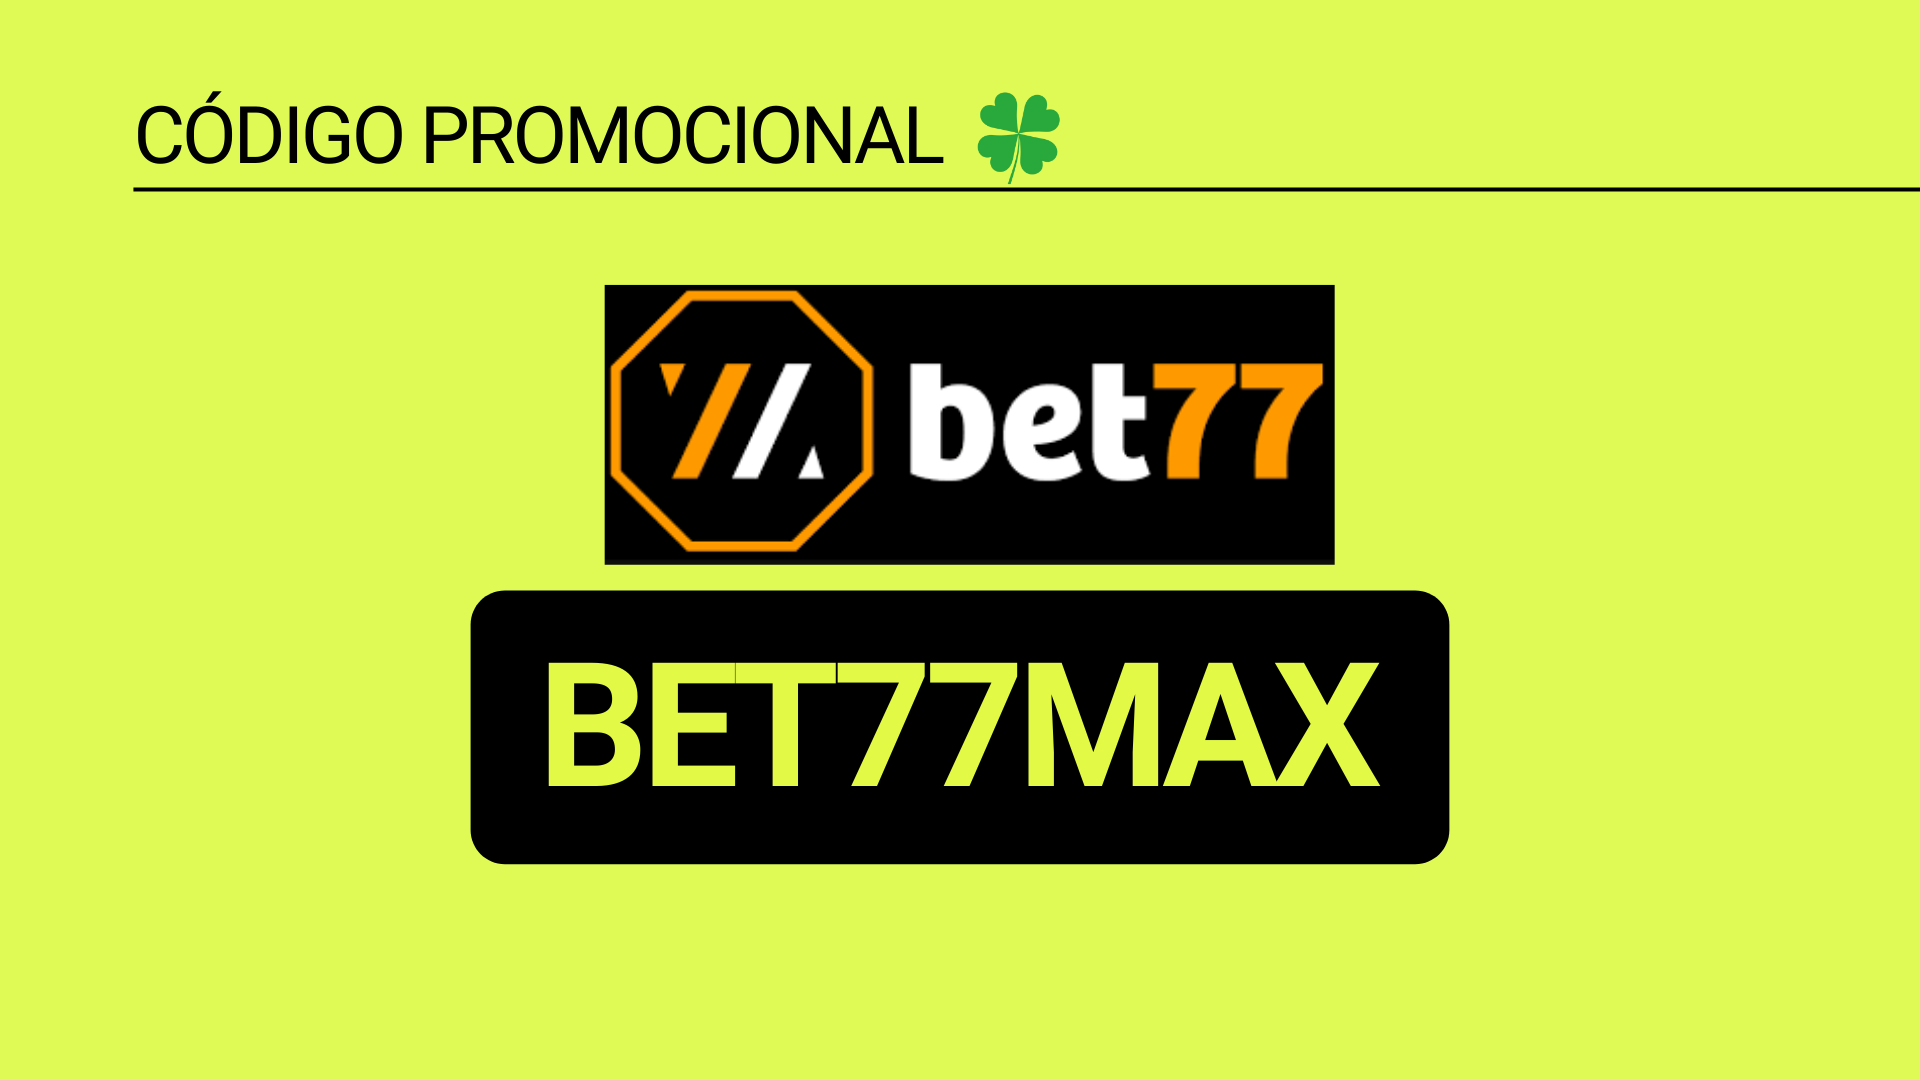 Código promocional Bet77 “BET77MAX”: bônus de até 300%